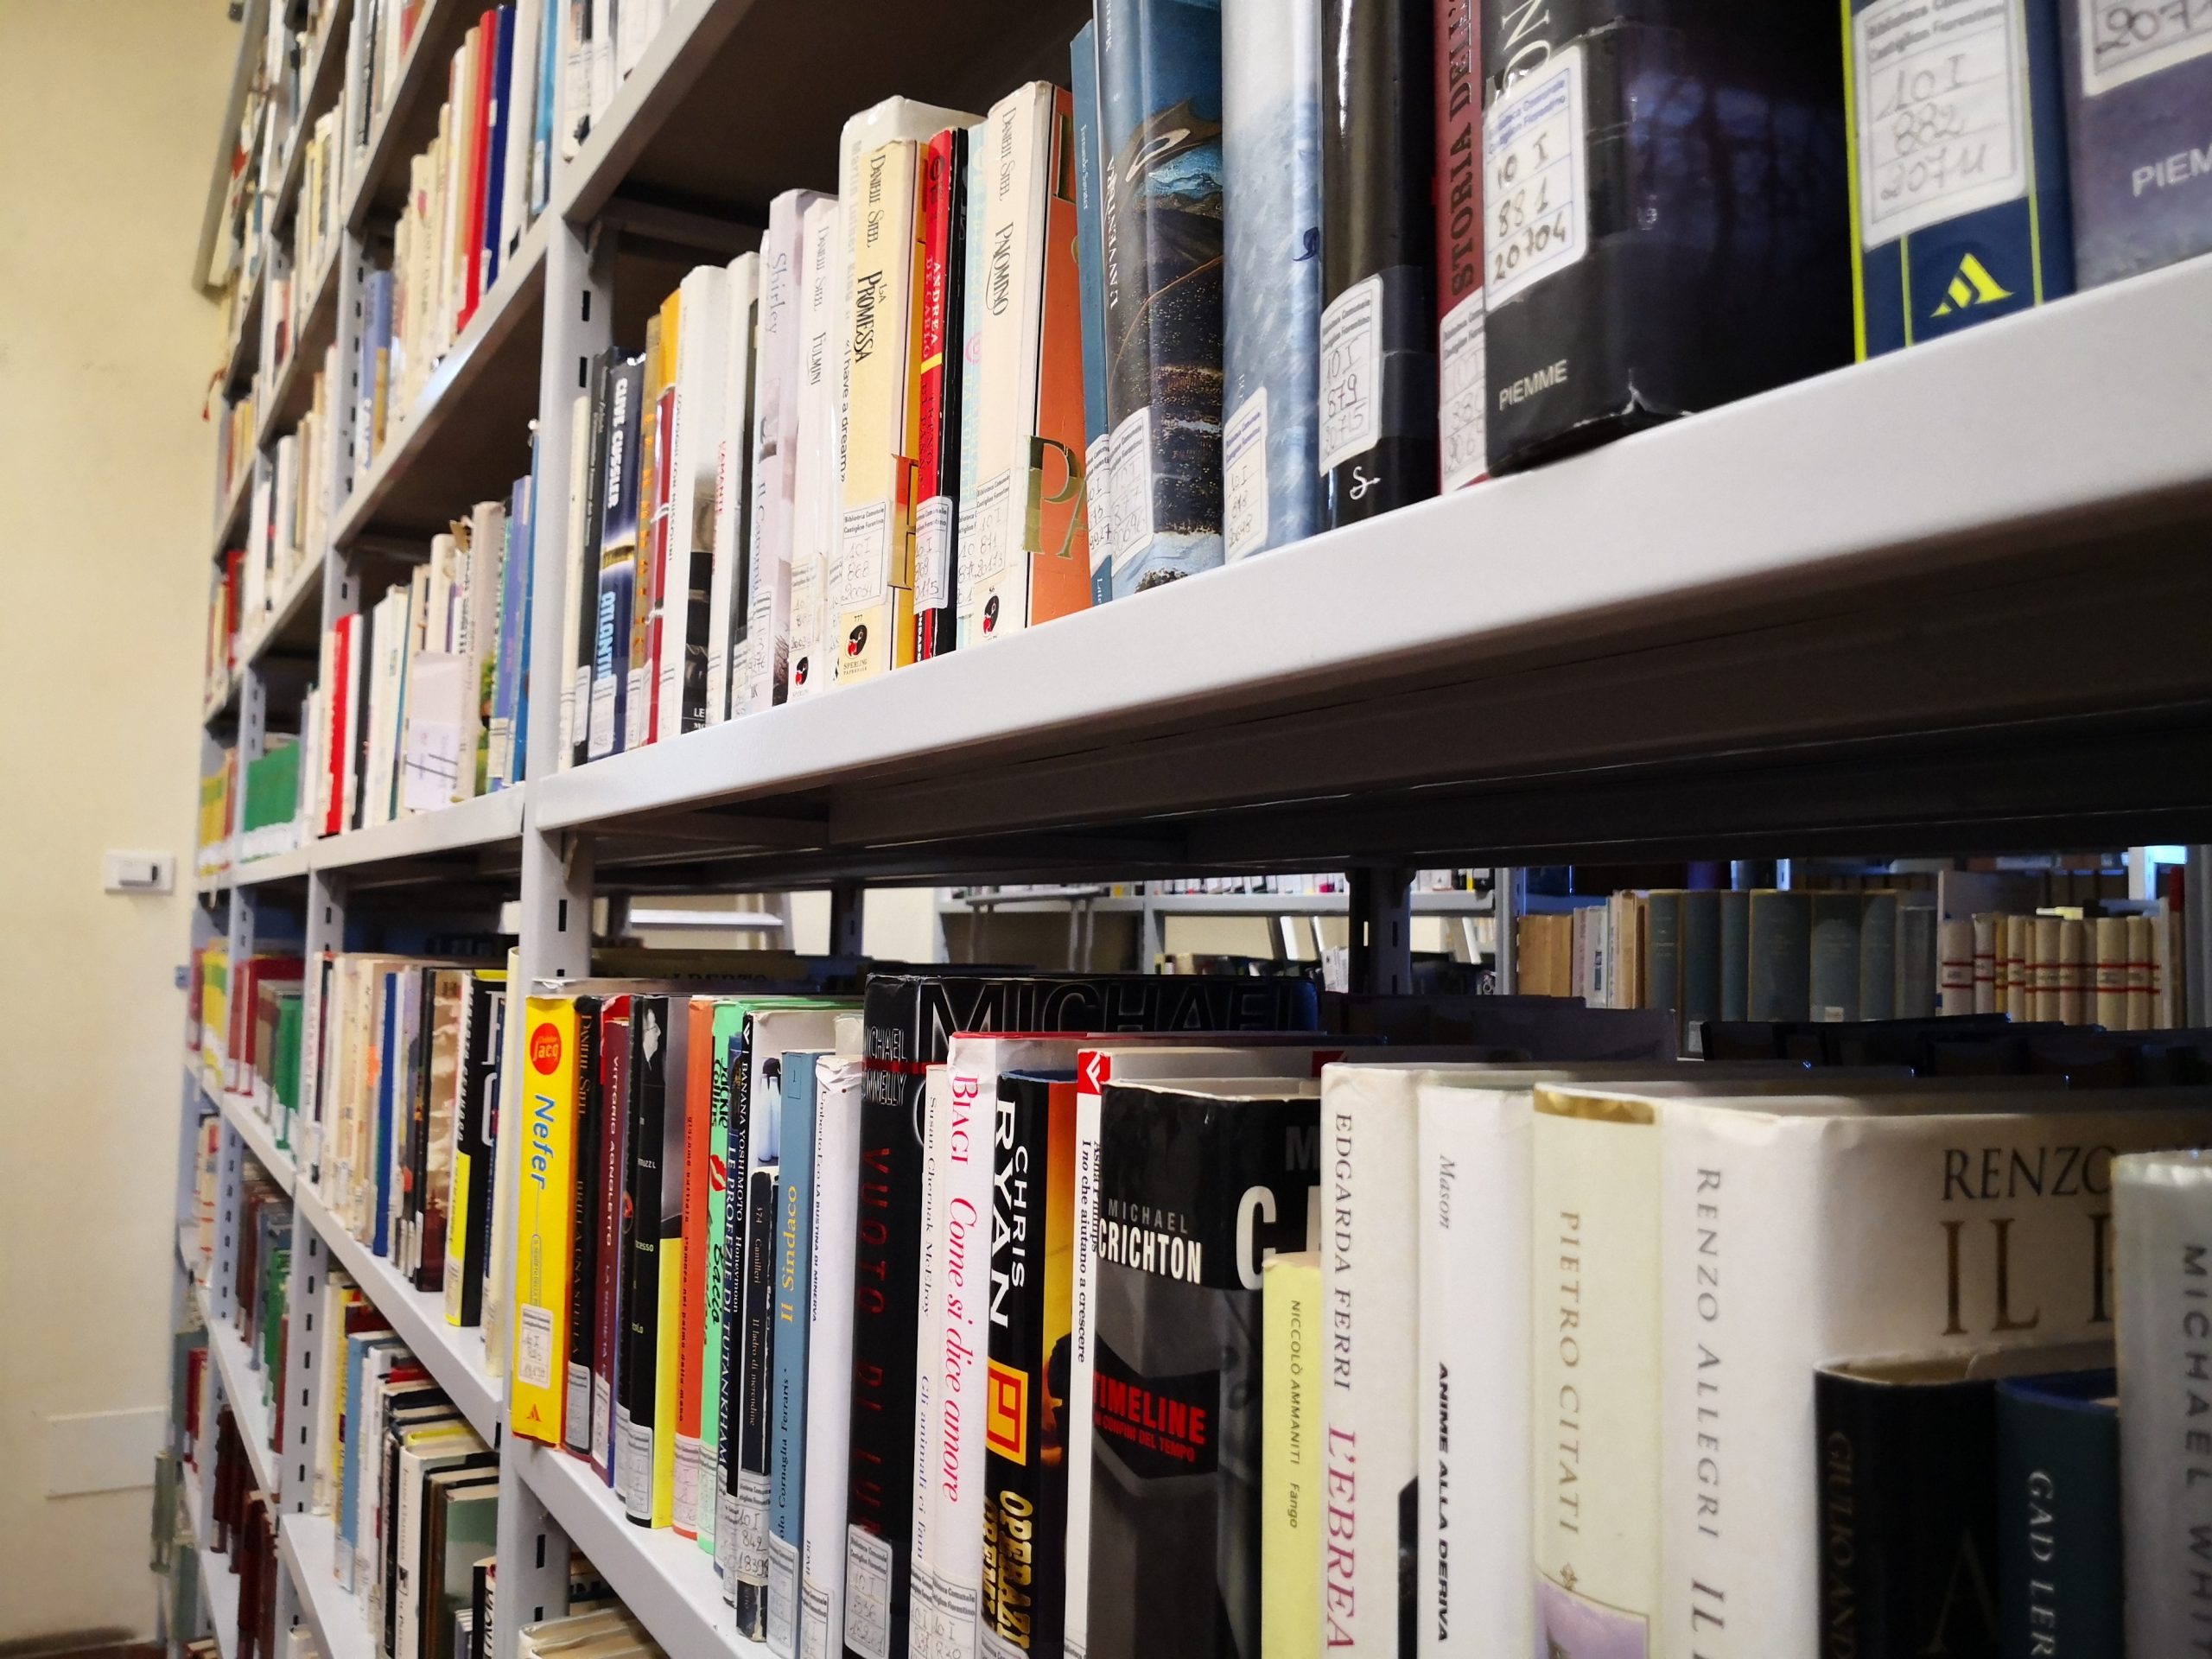 Chiusa per ferie la biblioteca comunale di Castiglion Fiorentino, riaprirà regolarmente lunedì 17 agosto